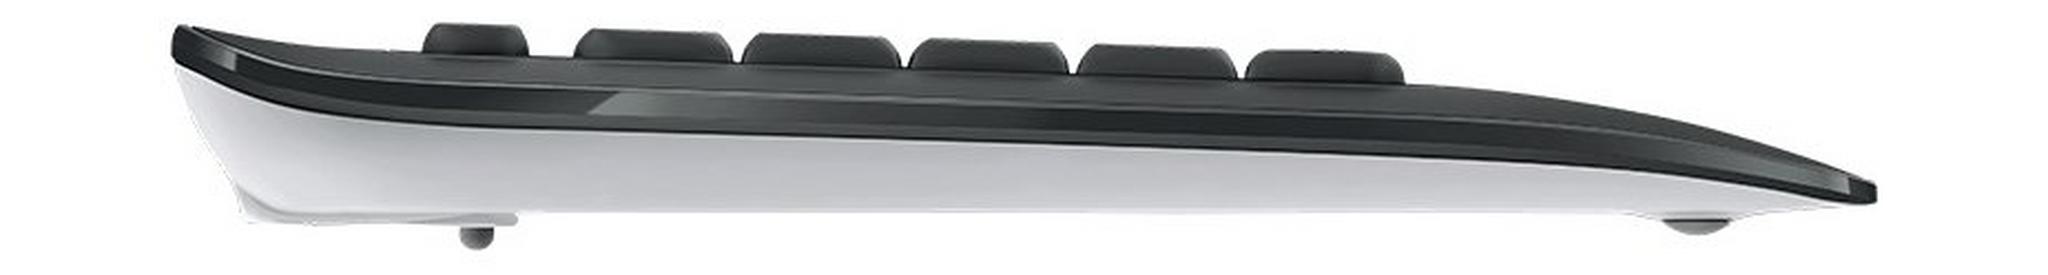 Logitech MK540 Wireless Keyboard and Mouse Combo (920-008693) - Black